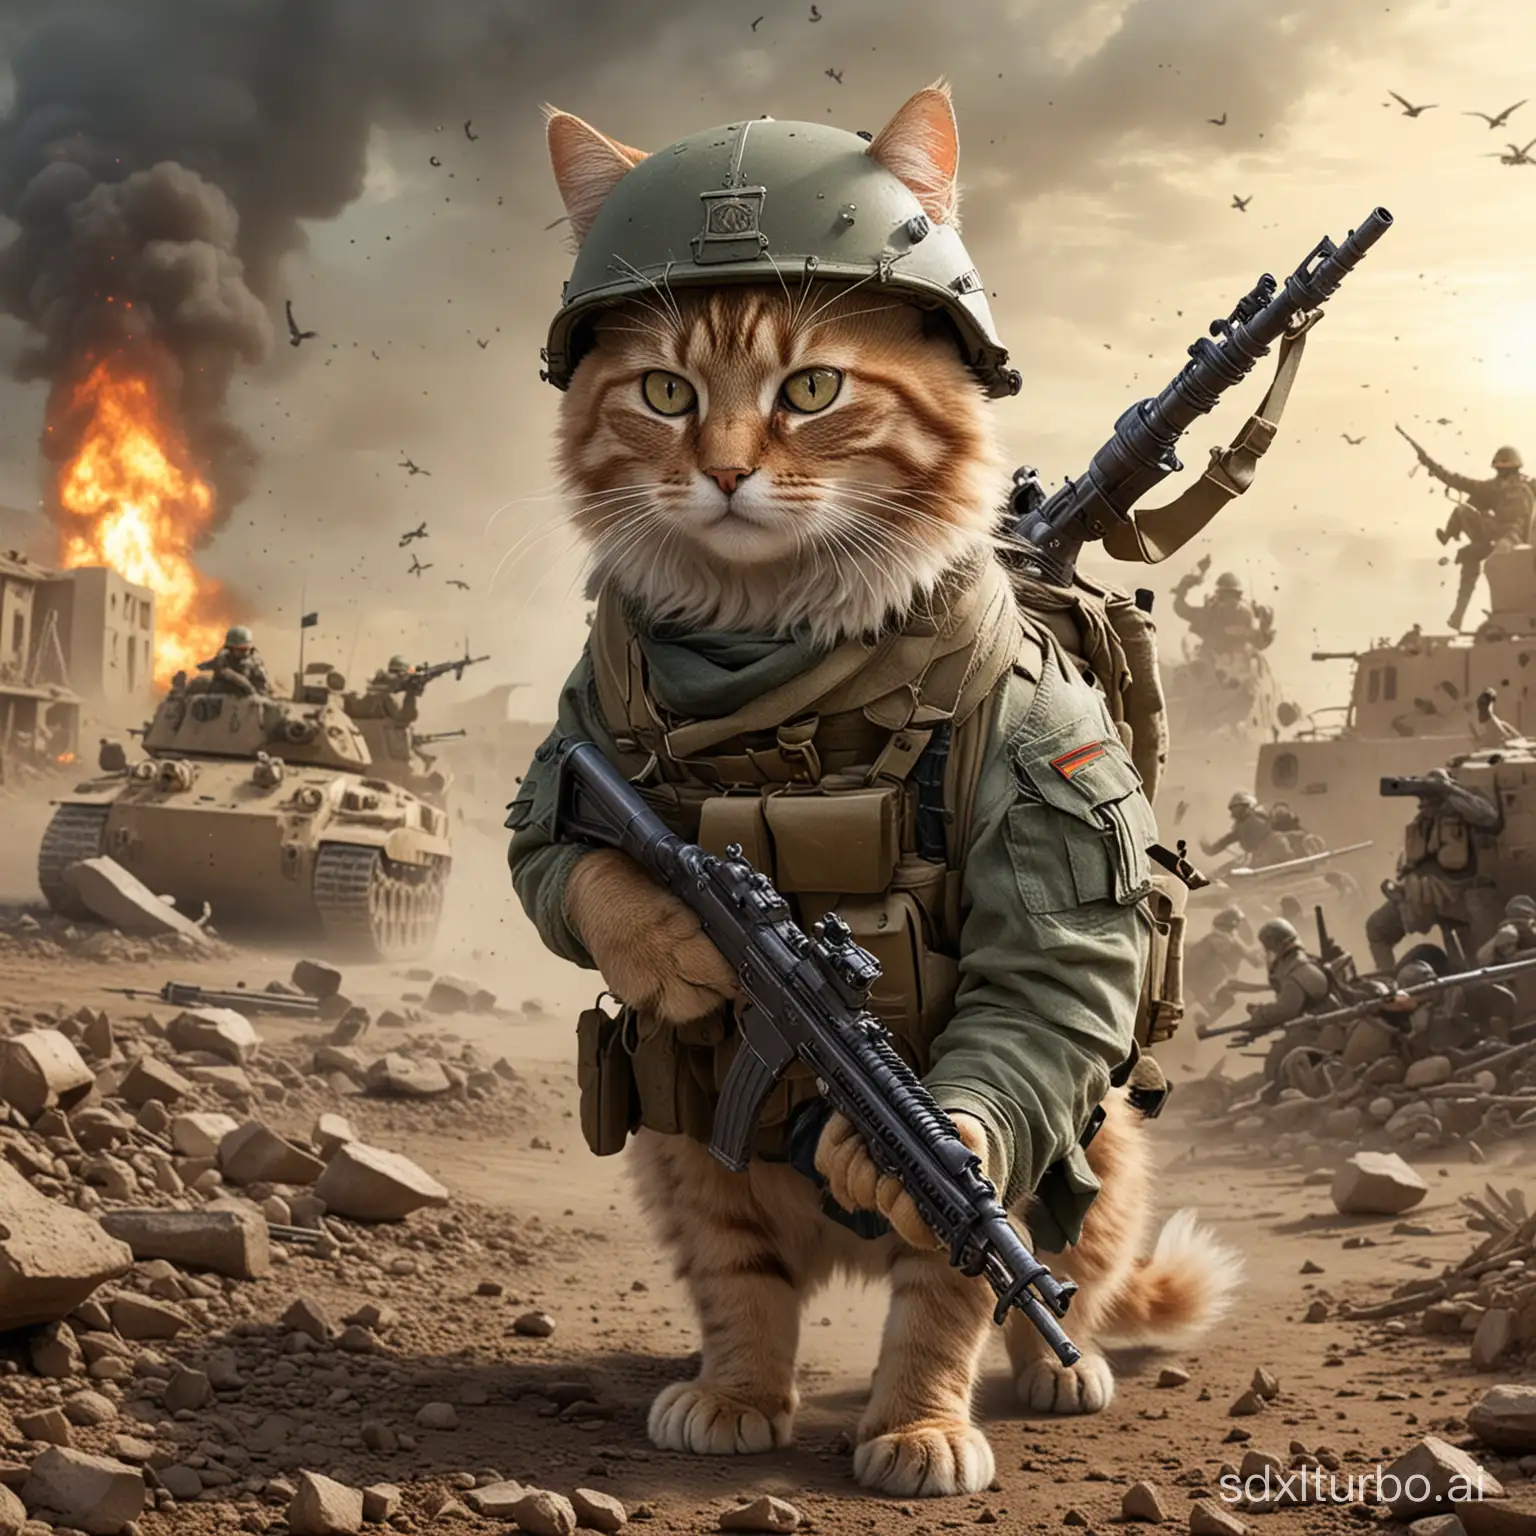 Fierce-Battle-Cat-in-Military-Gear-Amidst-Warzone